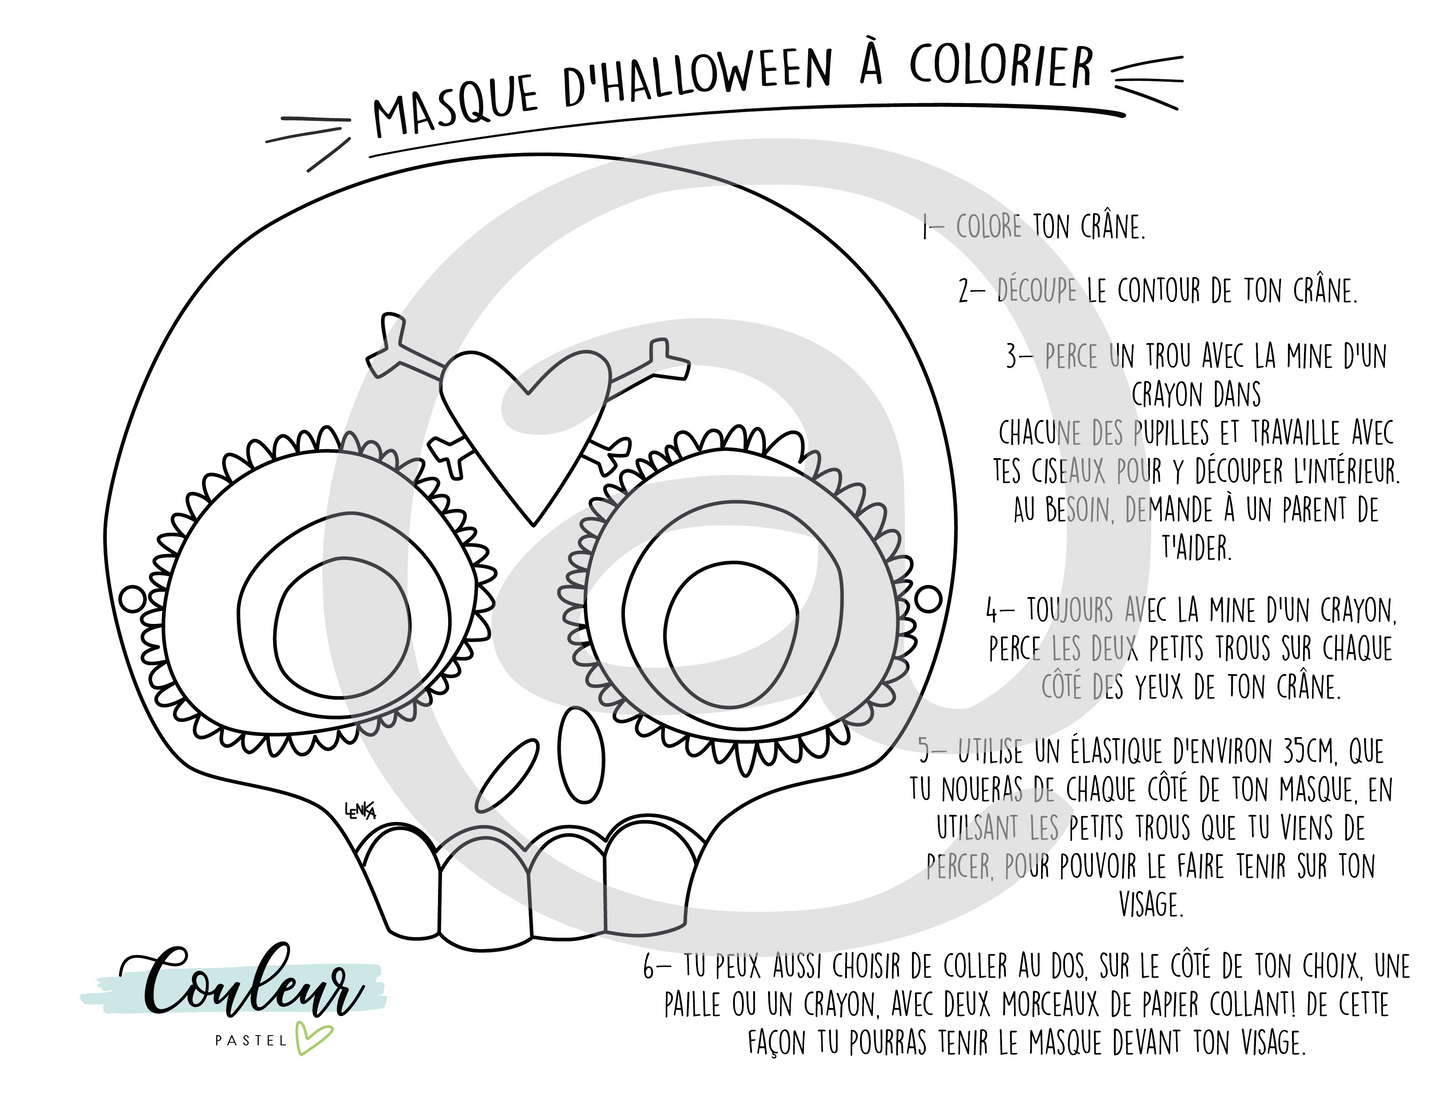 Masque d'Halloween à colorier - Crâne - par Lenka Lagueux - Couleur Pastel Dessins à colorierCouleur Pastel